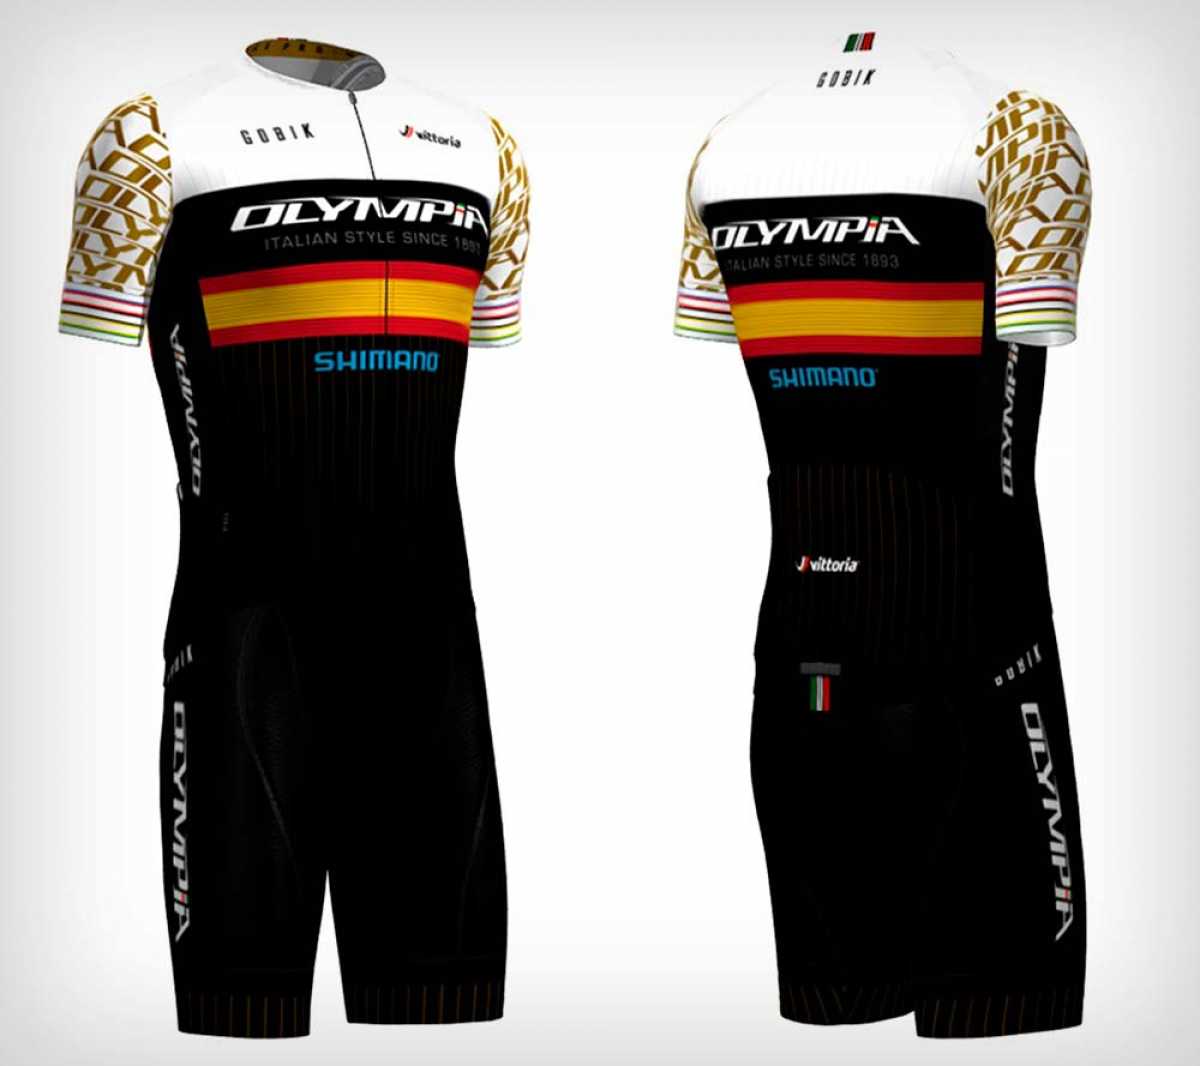 A la venta un maillot en edición limitada del Olympia Factory Cycling Team